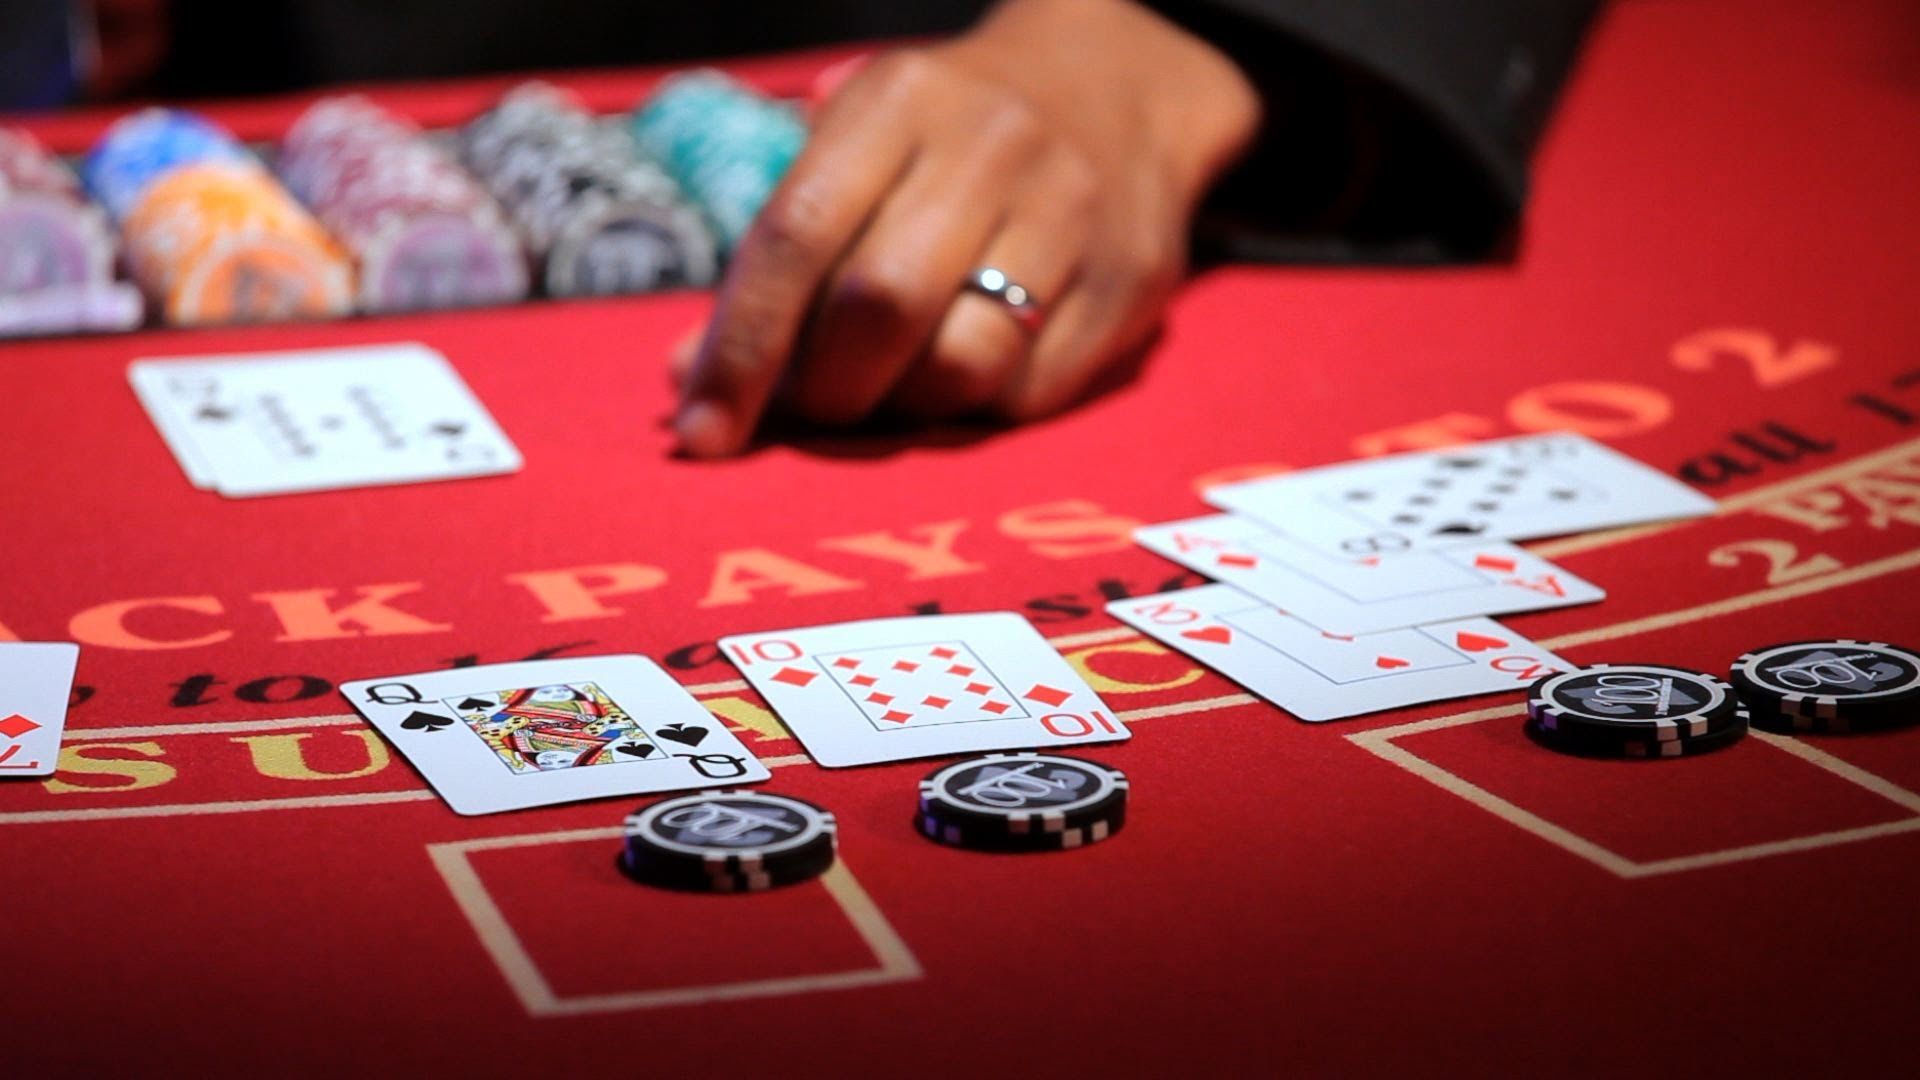 Basics of online poker gaming and poker room deposit